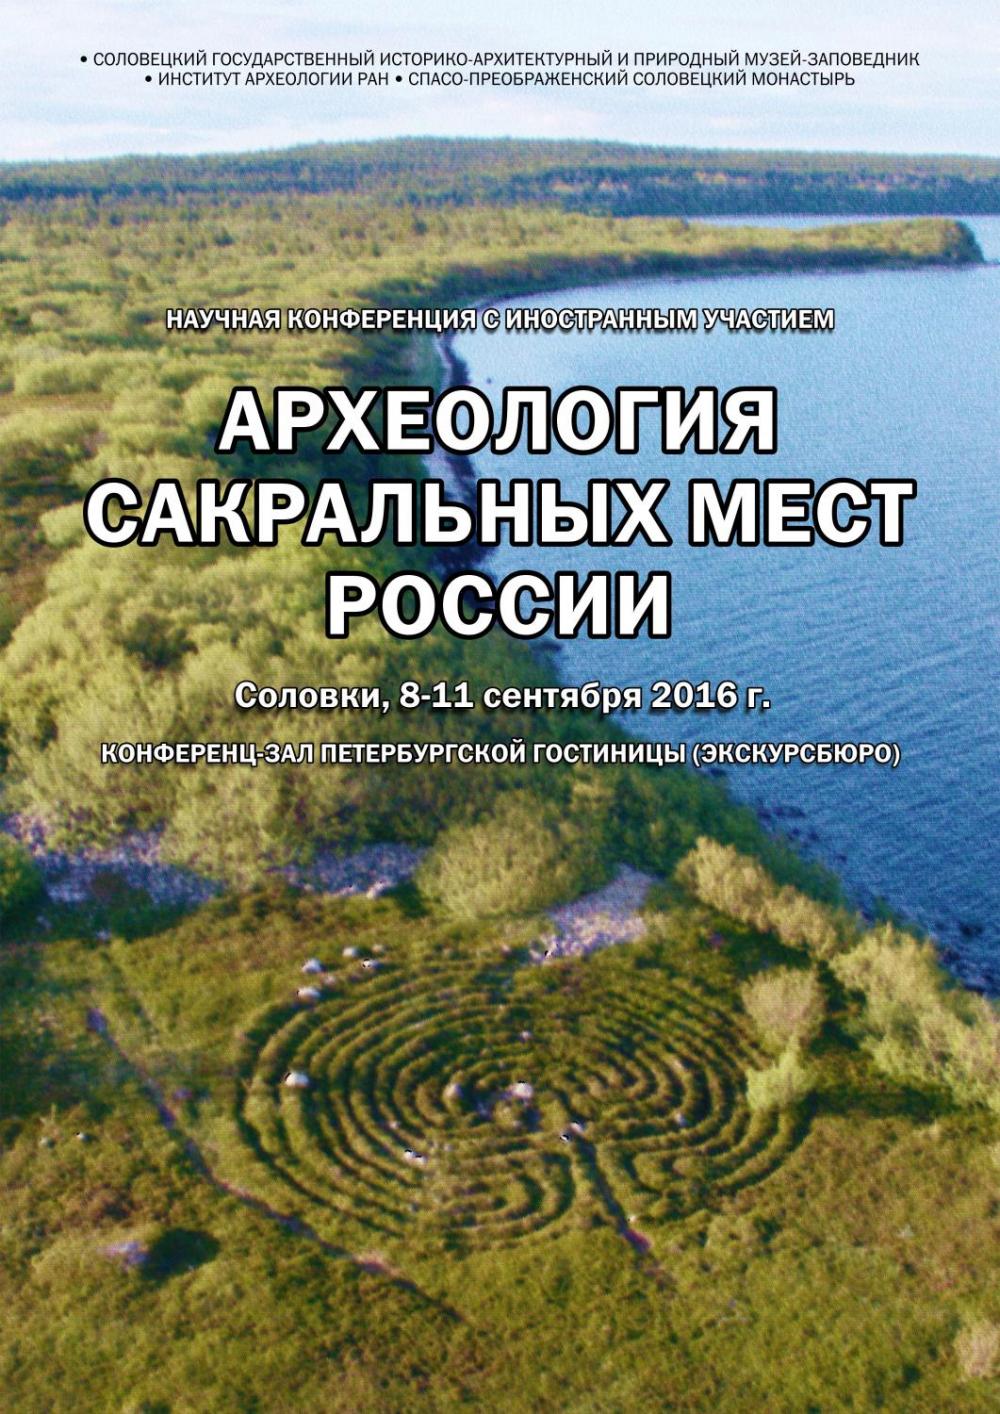 Афиша конференции «Археология сакральных мест России». 2016 г.